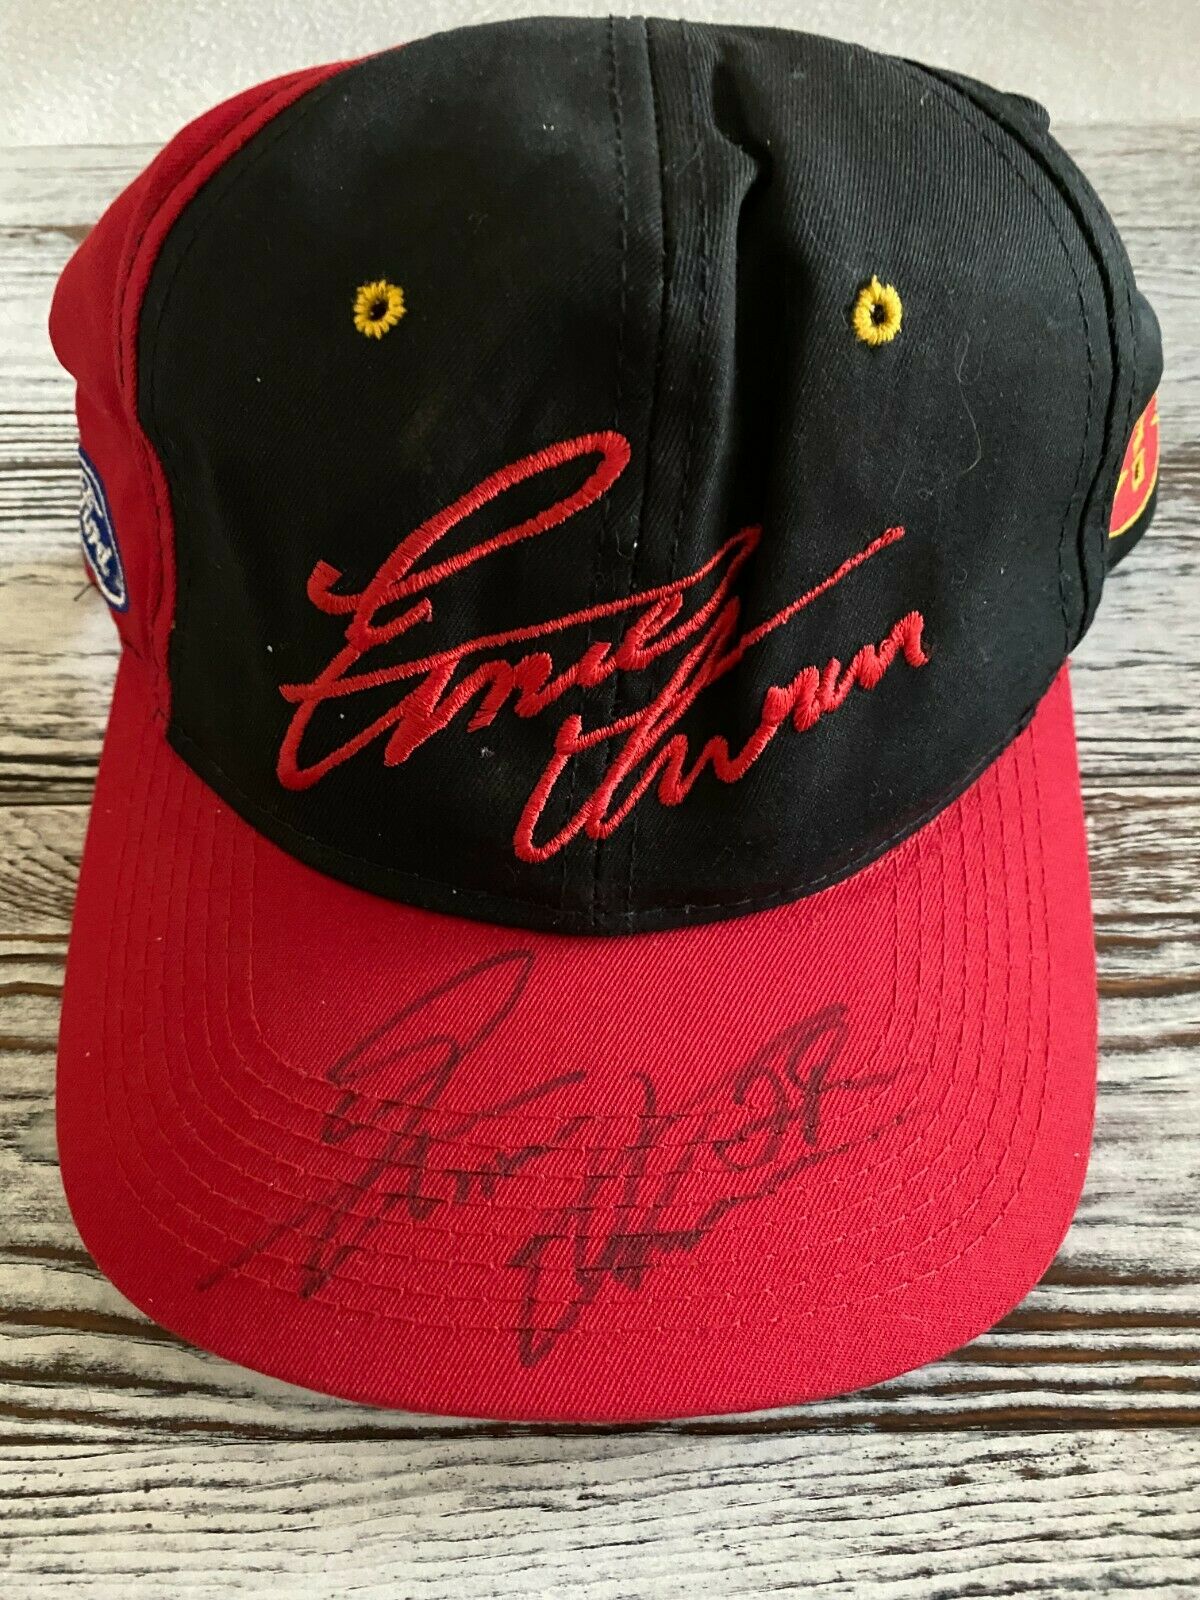 Vintage Ernie Irvan Ford #28 Autographed Signed Hat Nascar